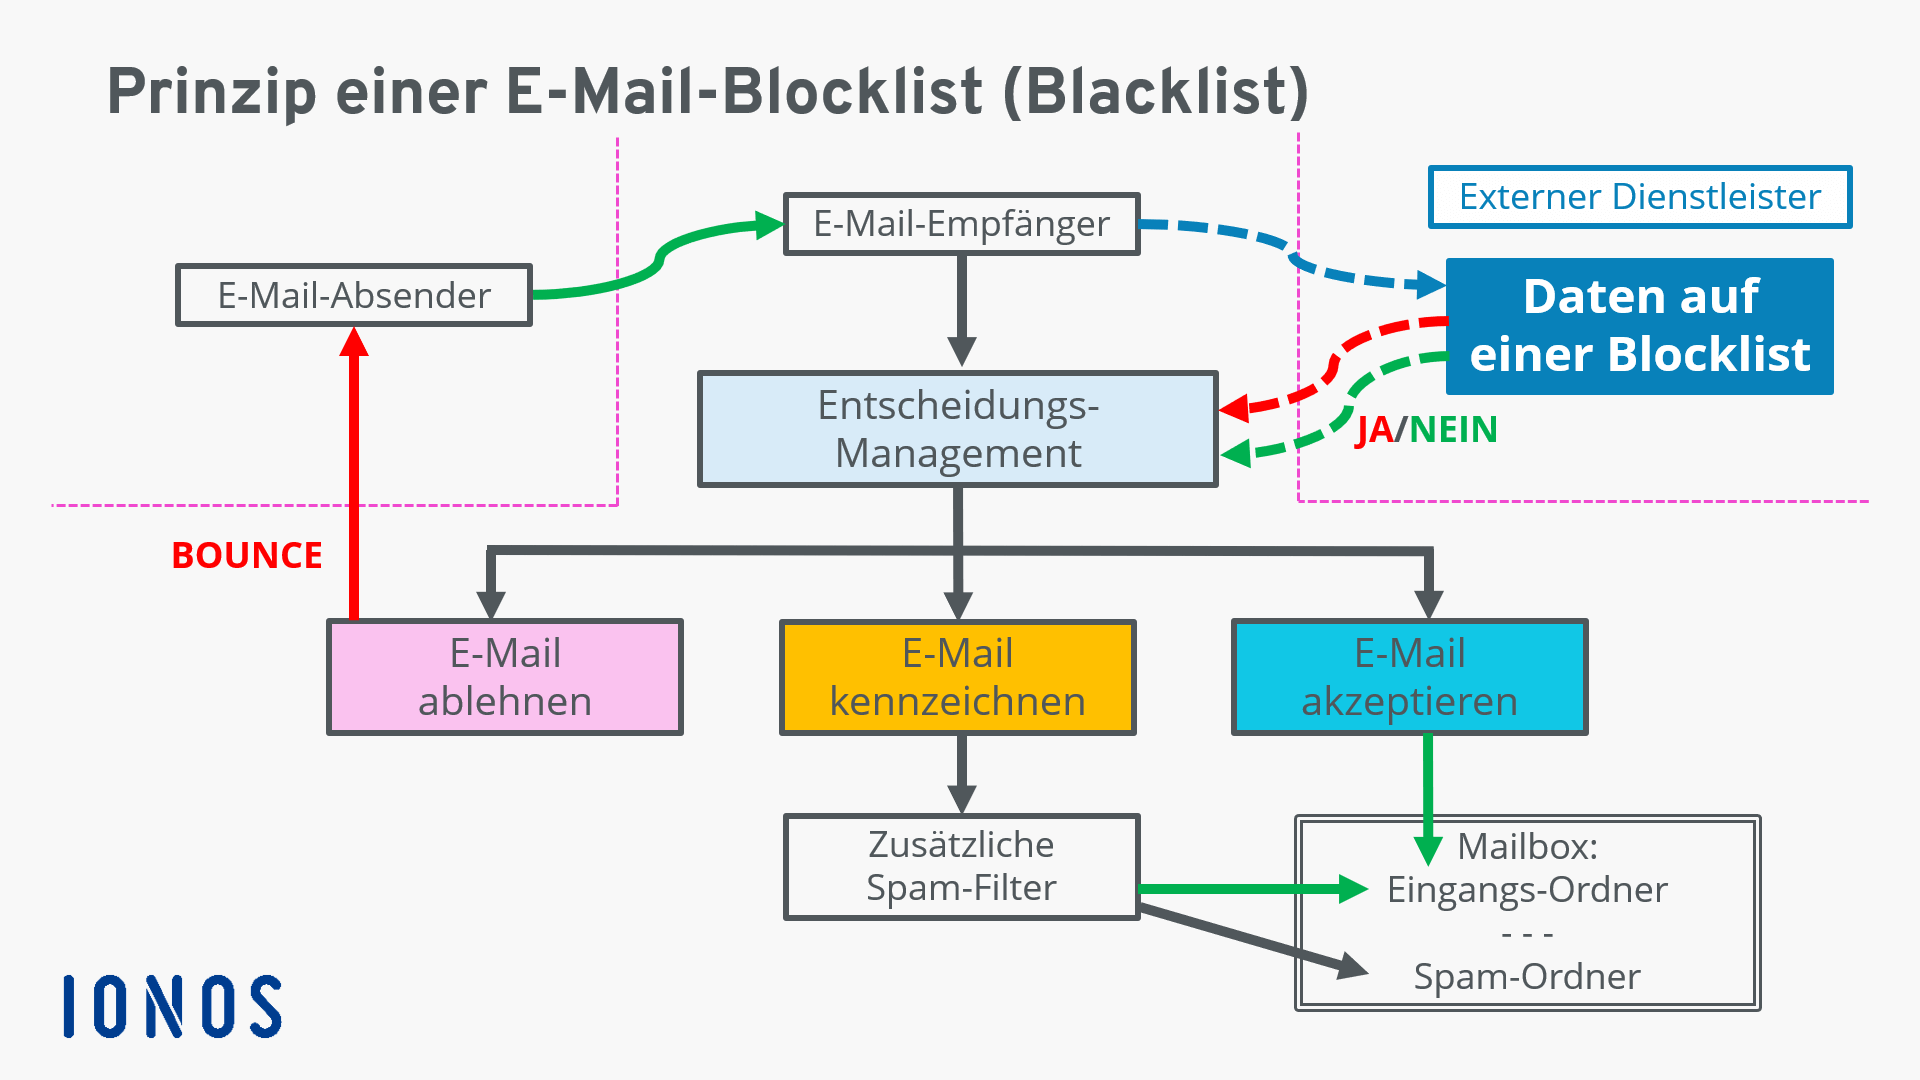 E-Mail-Blacklists: automatisierter Prozess einer Blocklist